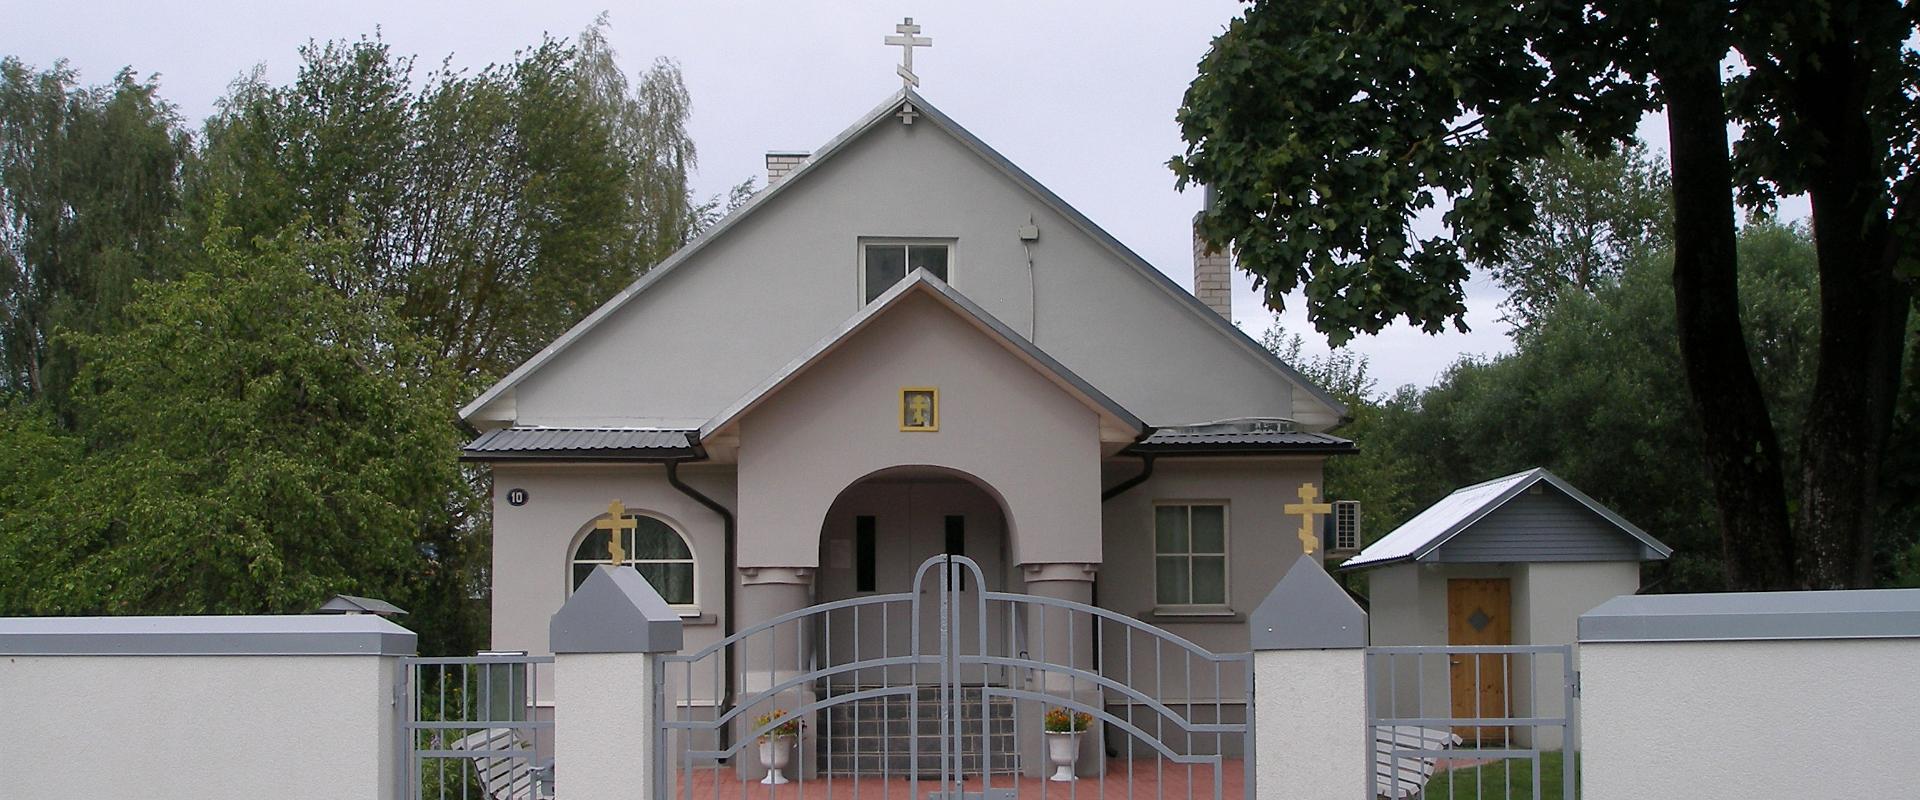 EVKL (Viron vanhauskoisten seurakuntien liitto) Tarton vanhauskoisten rukoushuone